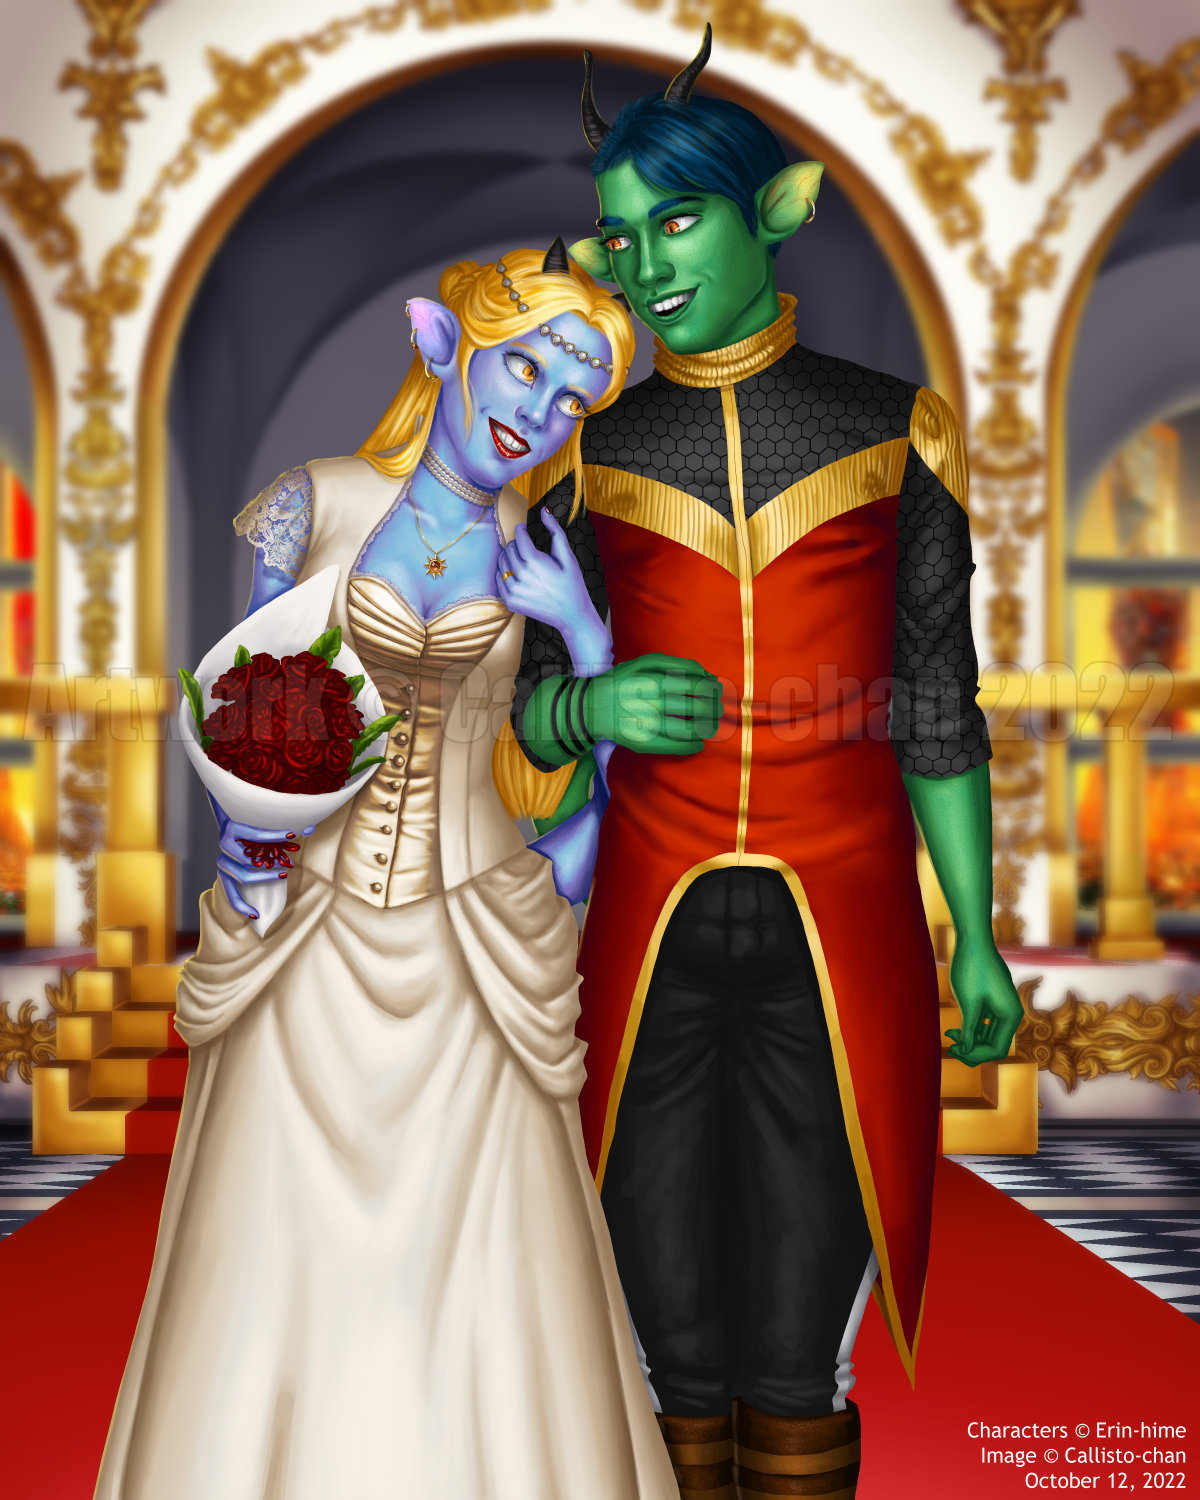 The Marriage of Aerona and Gaius